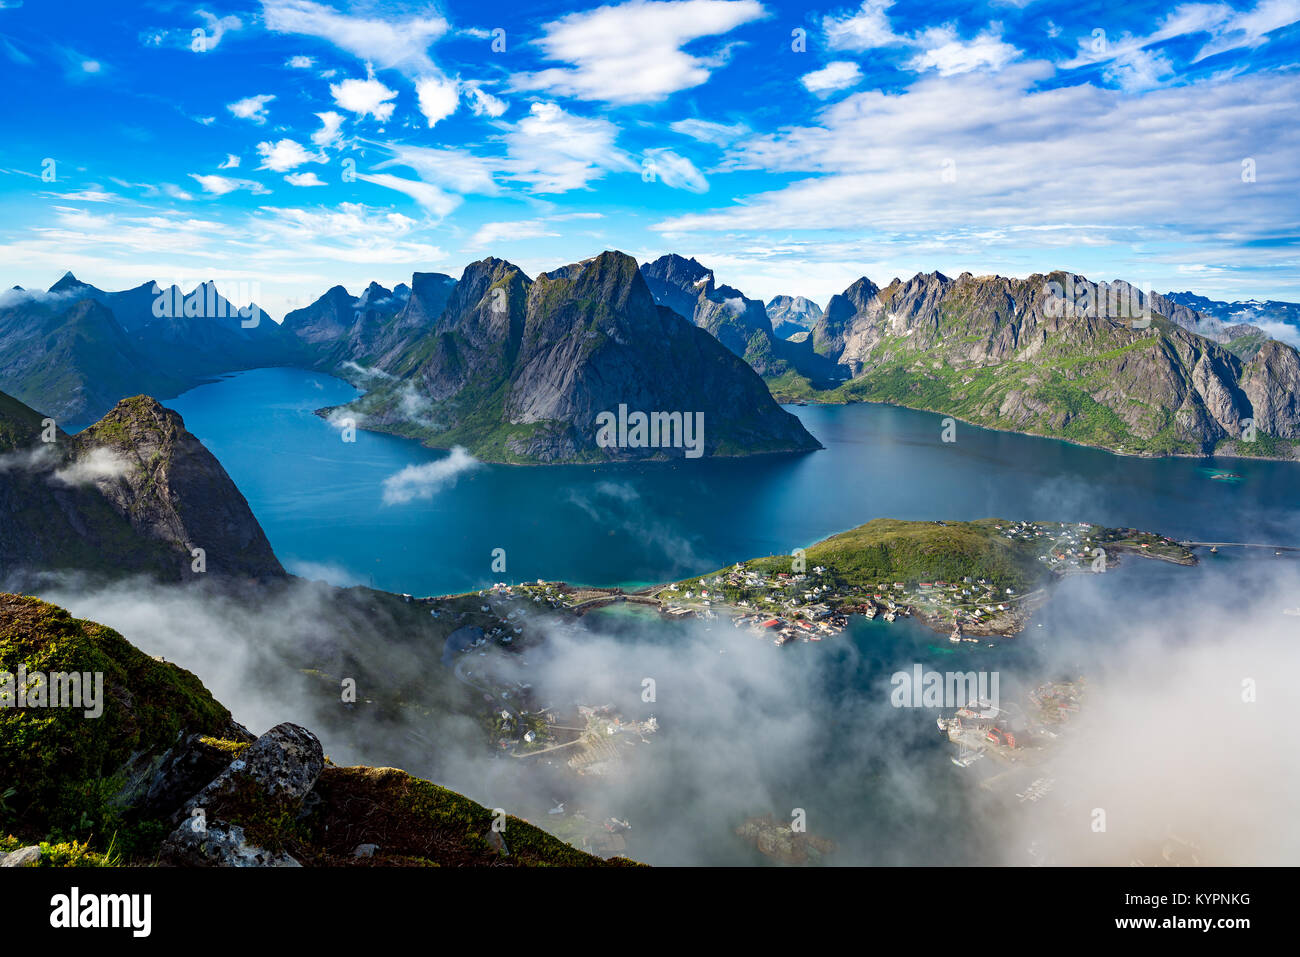 Le isole Lofoten sono un arcipelago la fotografia aerea., Norvegia. È noto per un caratteristico paesaggio con sensazionali montagne e picchi, mare aperto e shel Foto Stock